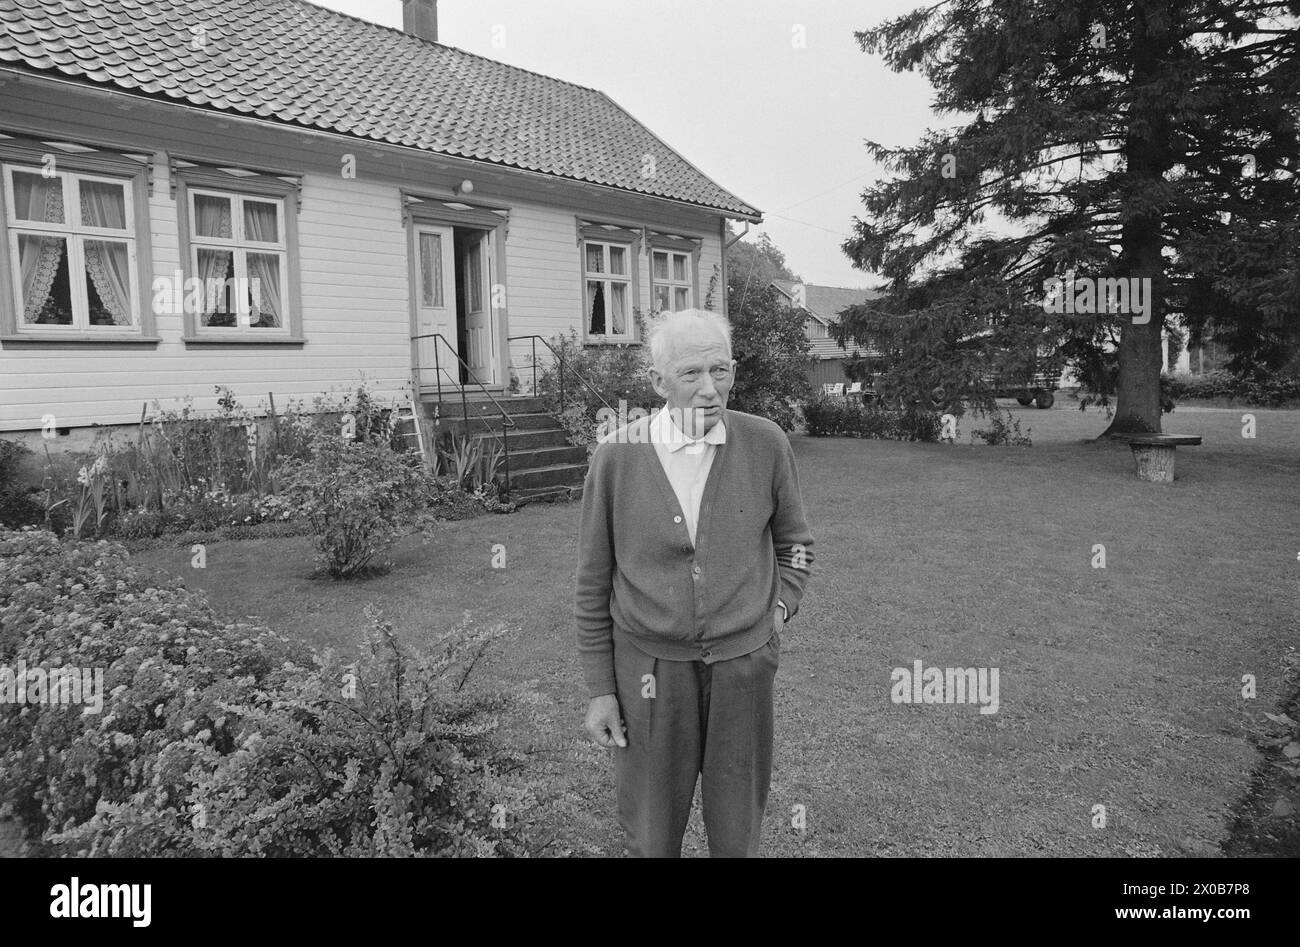 Aktuell 36-2-1973: De Holder kokenDet er er 57 år siden Einar Gerhardsen für første Gang deltok i en valgkamp. Nå er han 75 år, Männer slåss fortatt i fremste linje. Også i andre partier er de gamle med. Kjell Bondevik, 72 år, og Bent Røiseland, 71 år, Spiller viktige Roller i kampen. Aktuell har fulgt hver av dem én dag. Røiseland slappet av hjemme i Holum, tl sønnen kjørte Ham til et kveldsmøte i Vennesla. Foto: Aage Storløkken / aktuell / NTB ***Foto IKKE BILDEBEHANDLET*** dieser Text wurde automatisch übersetzt! Stockfoto